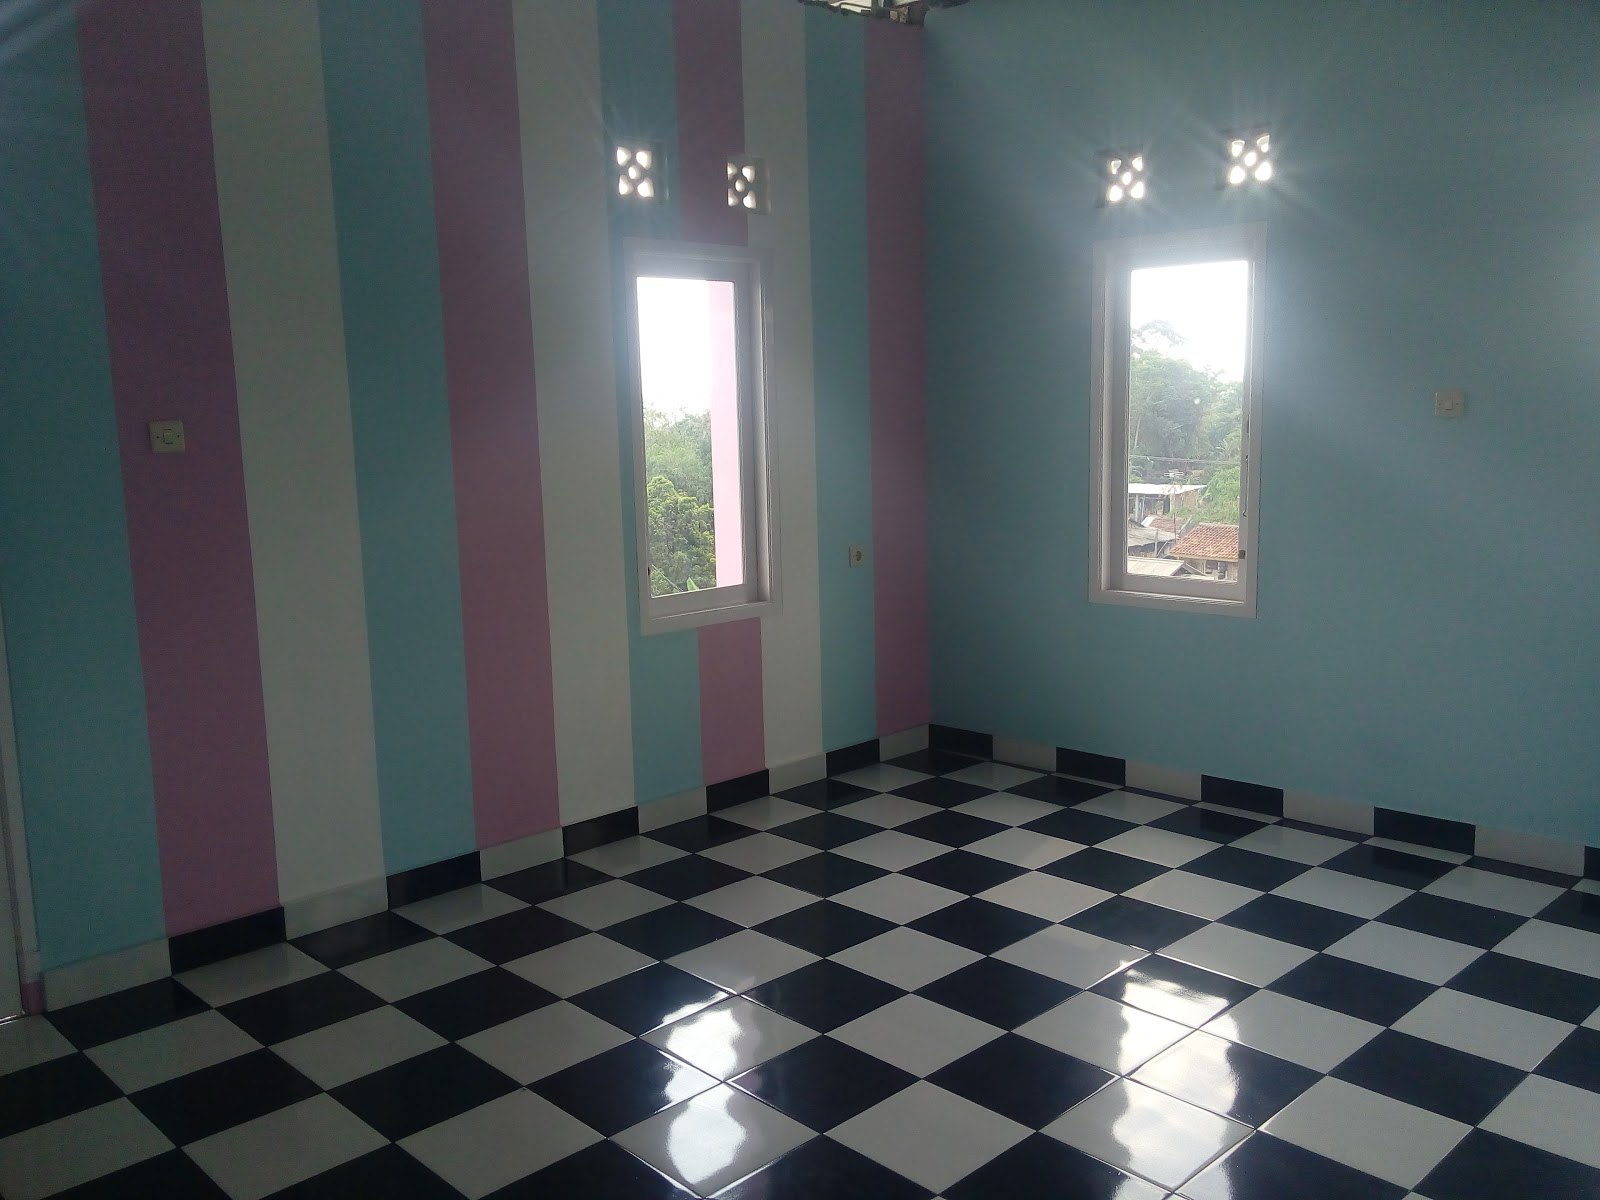 Lantai Rumah Kamar Model Catur Dengan Keramik INFO HARGA BAHAN